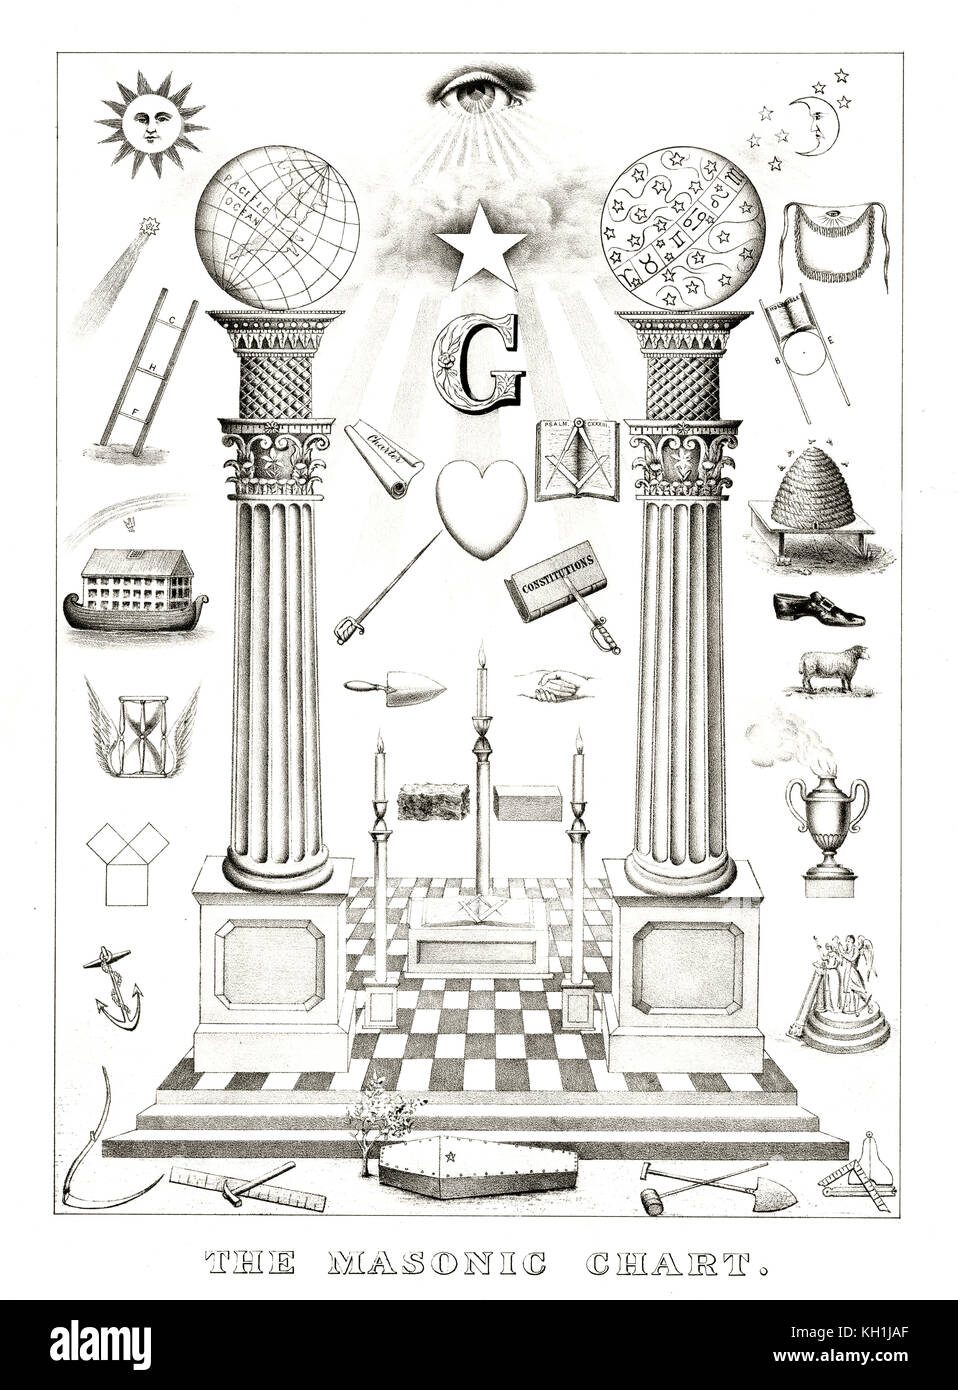 Freemason Organization Chart